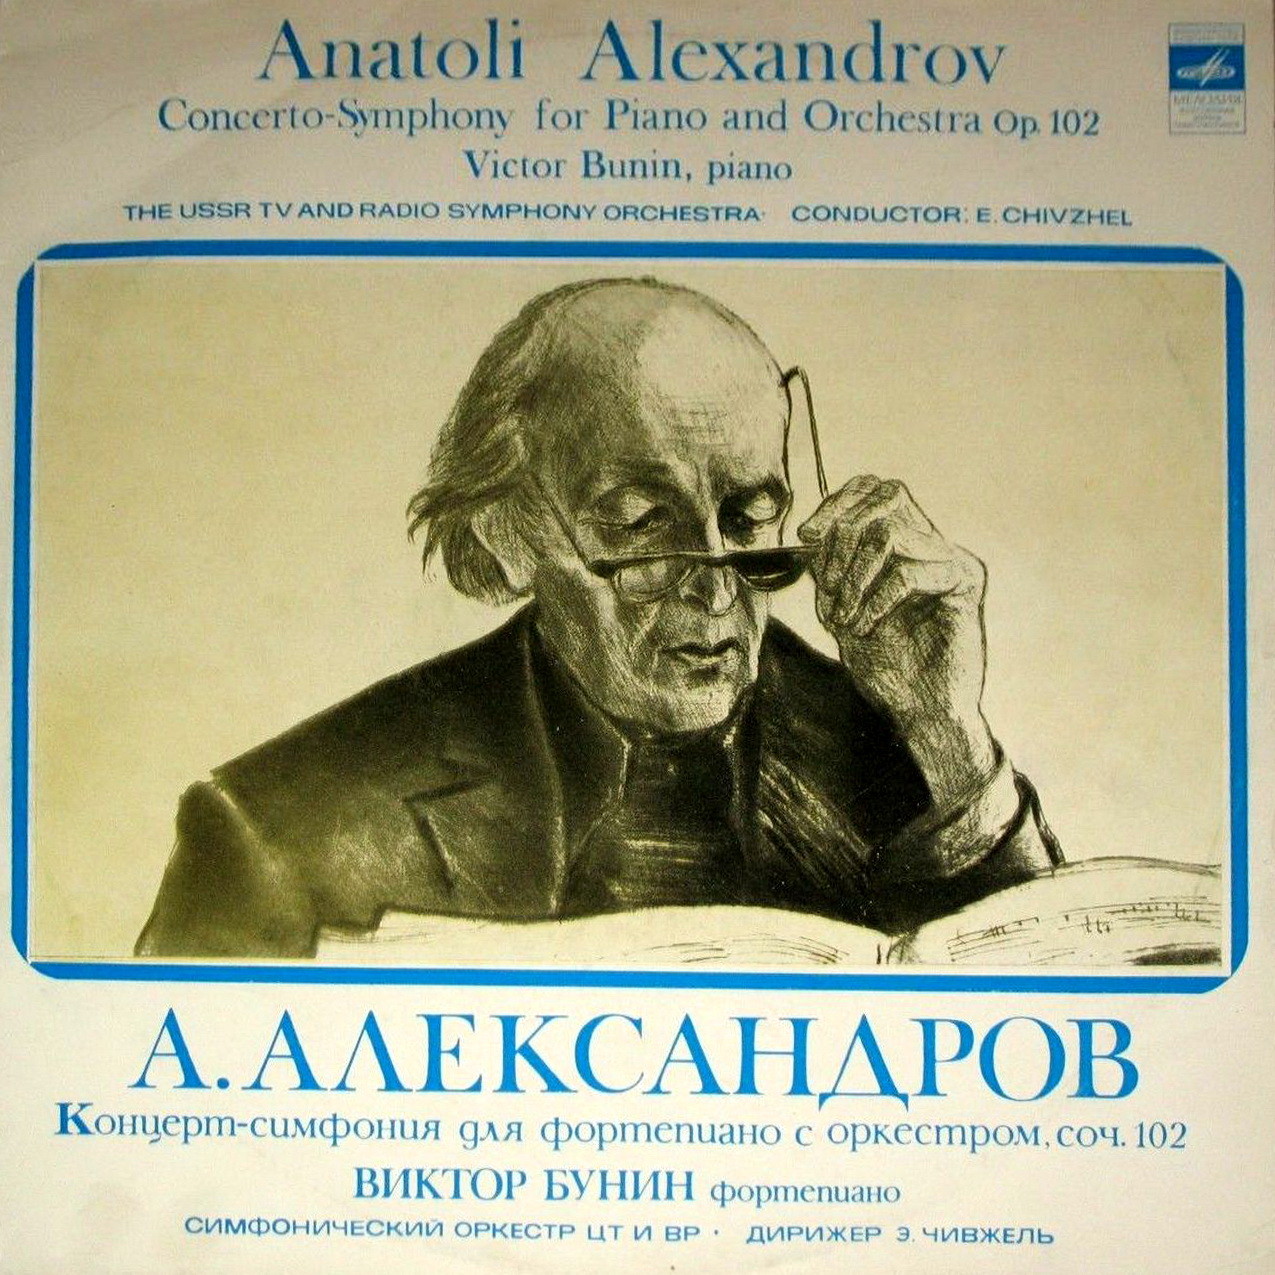 Ан. АЛЕКСАНДРОВ (1888-1982). Концерт-симфония для фортепиано с оркестром, соч. 102